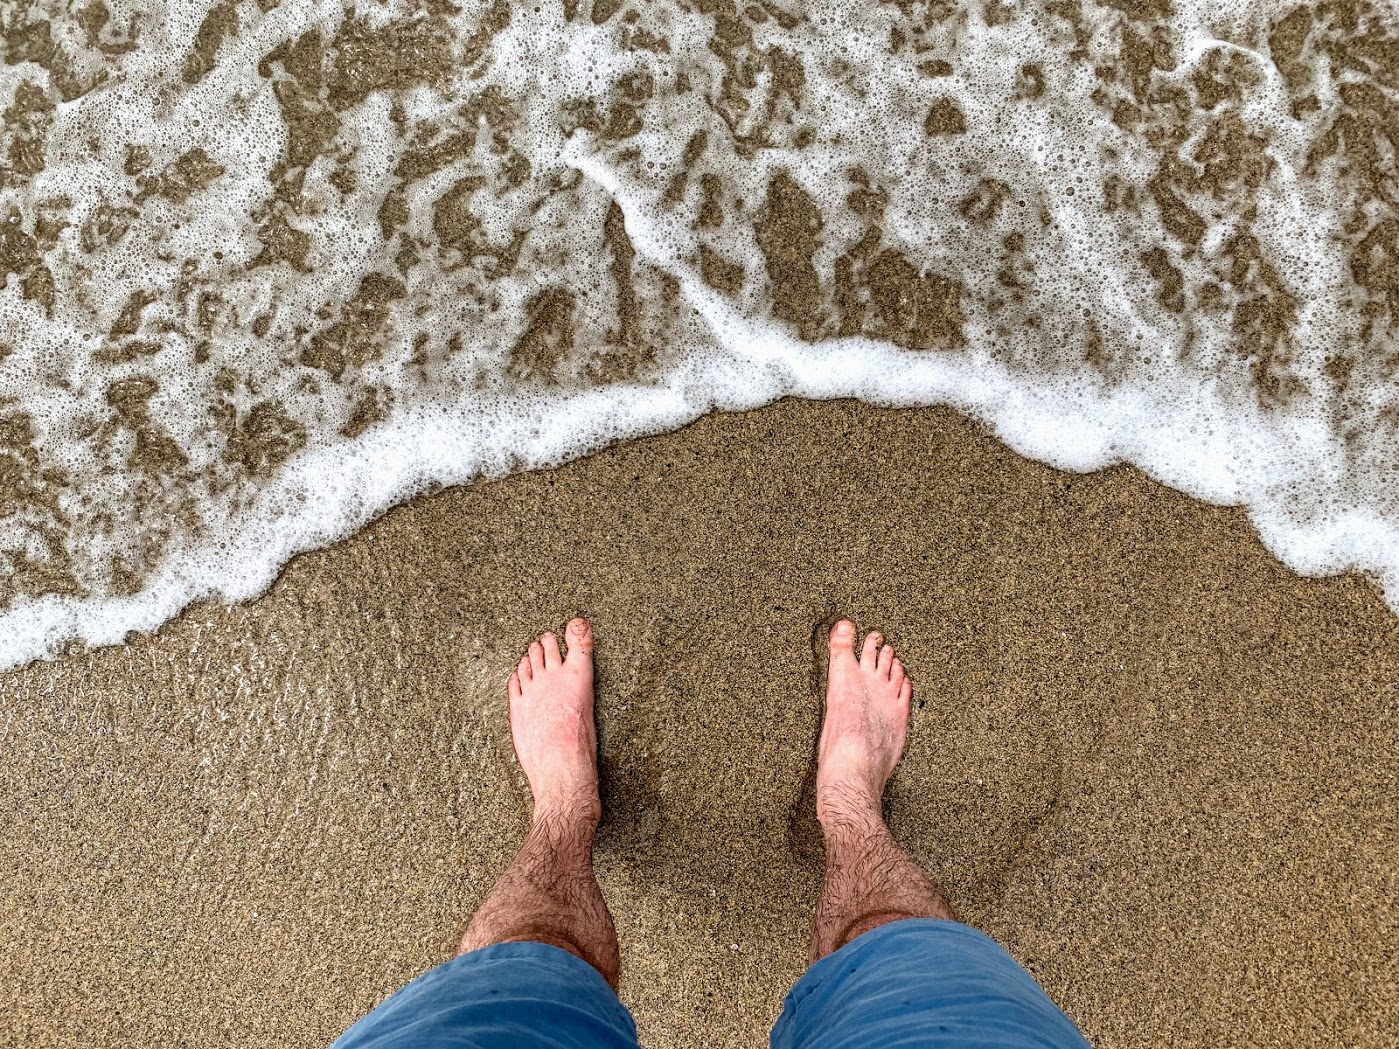 a person's feet on a beach